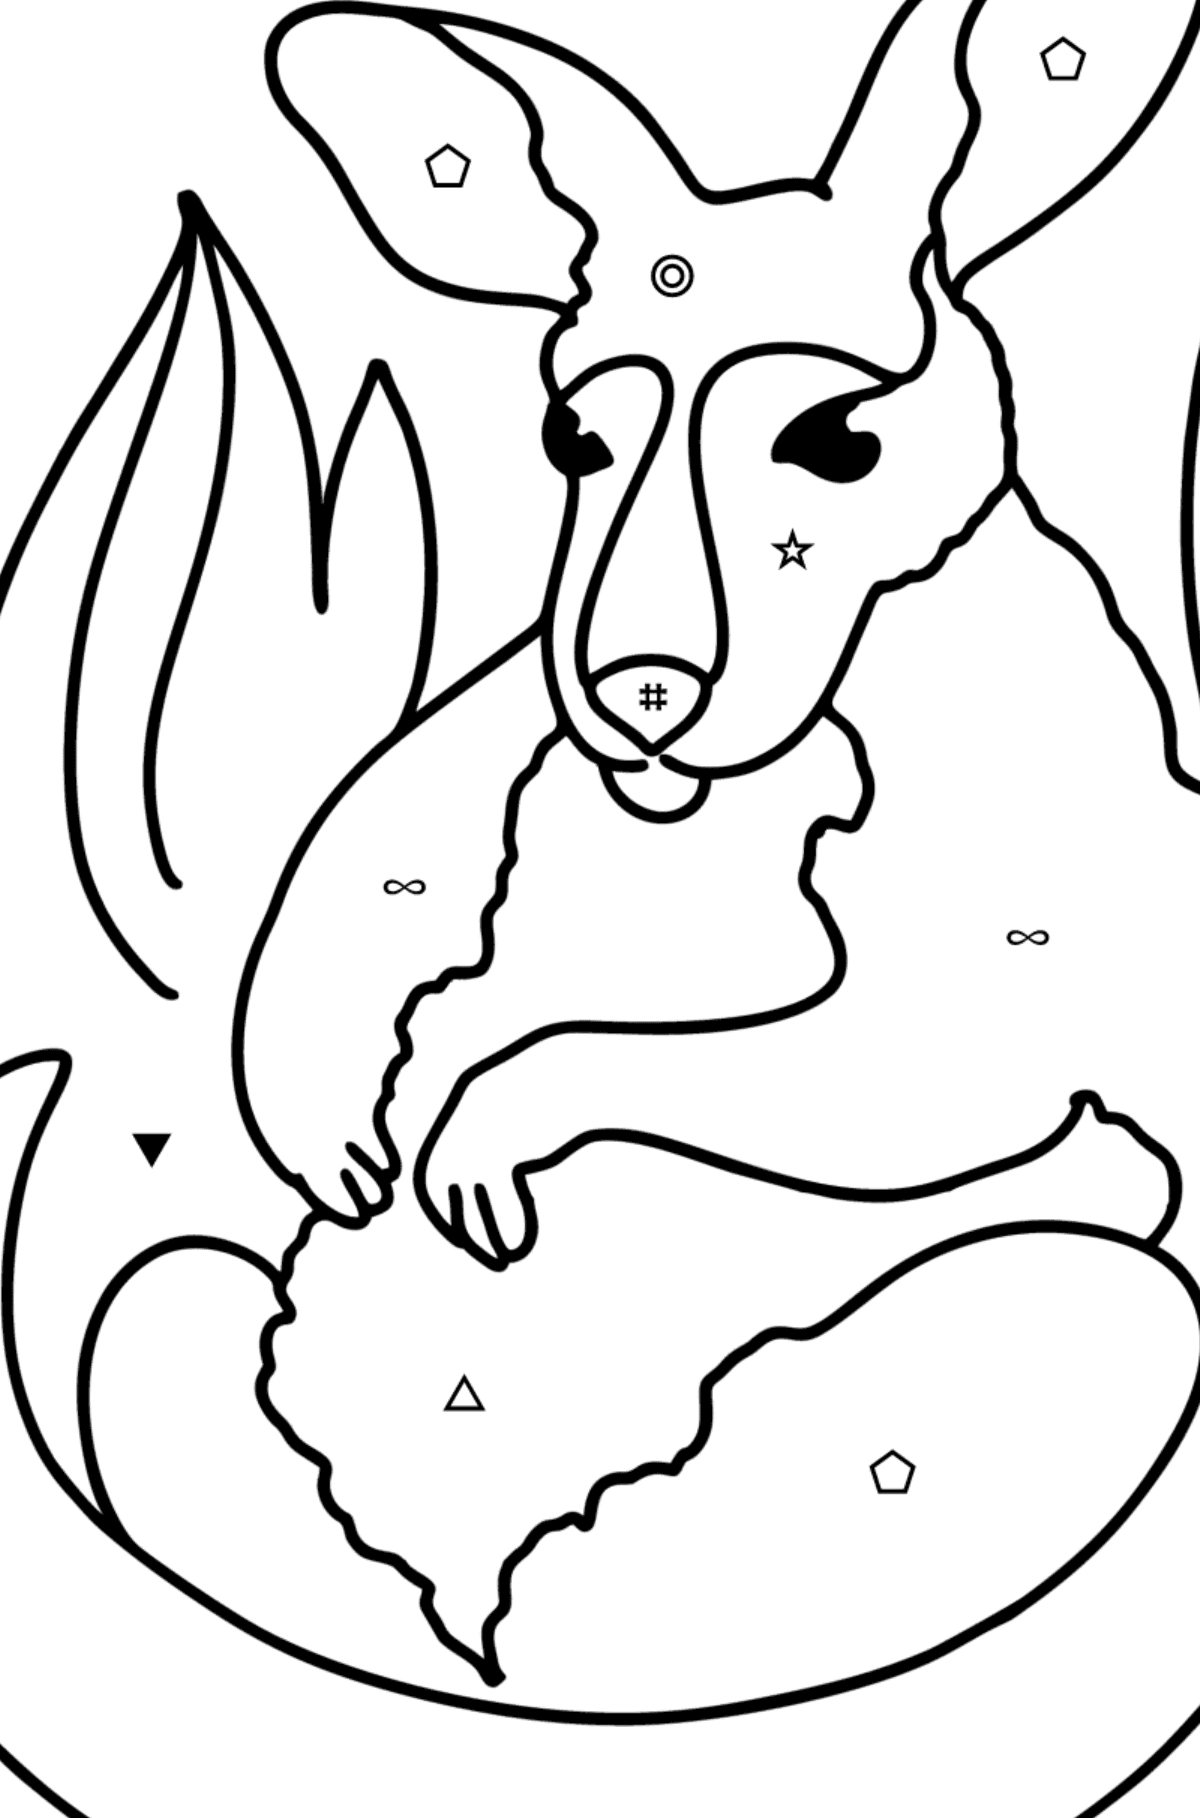 Kolorowanka Adorable baby kangur - Kolorowanie według symboli i figur geometrycznych dla dzieci